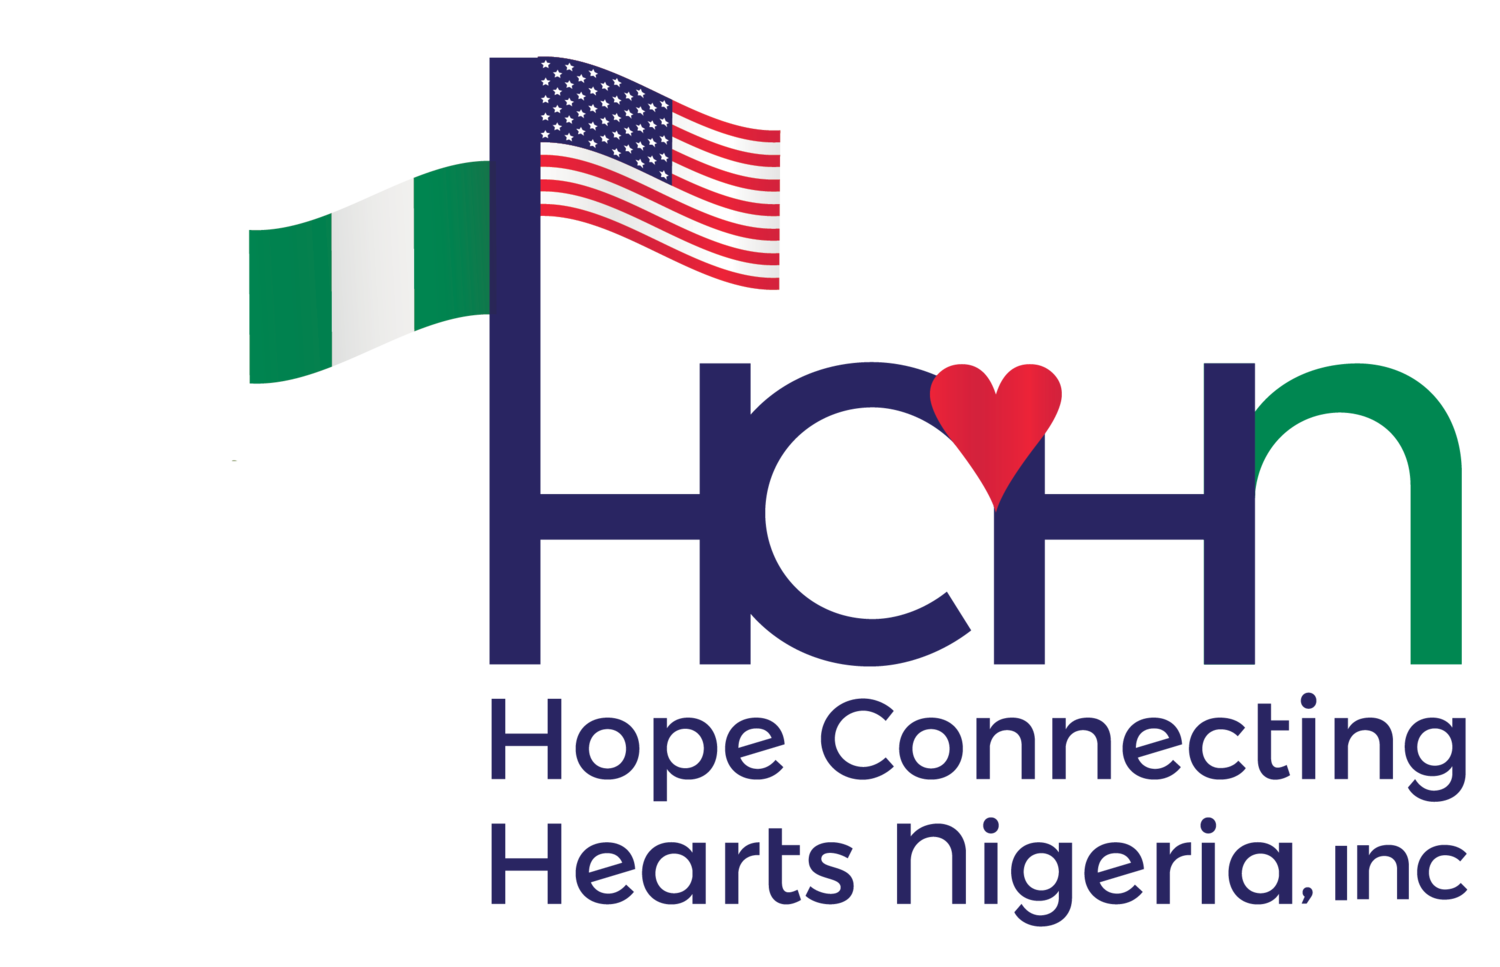 Hope Connecting Hearts Nigeria (Copy) (Copy)